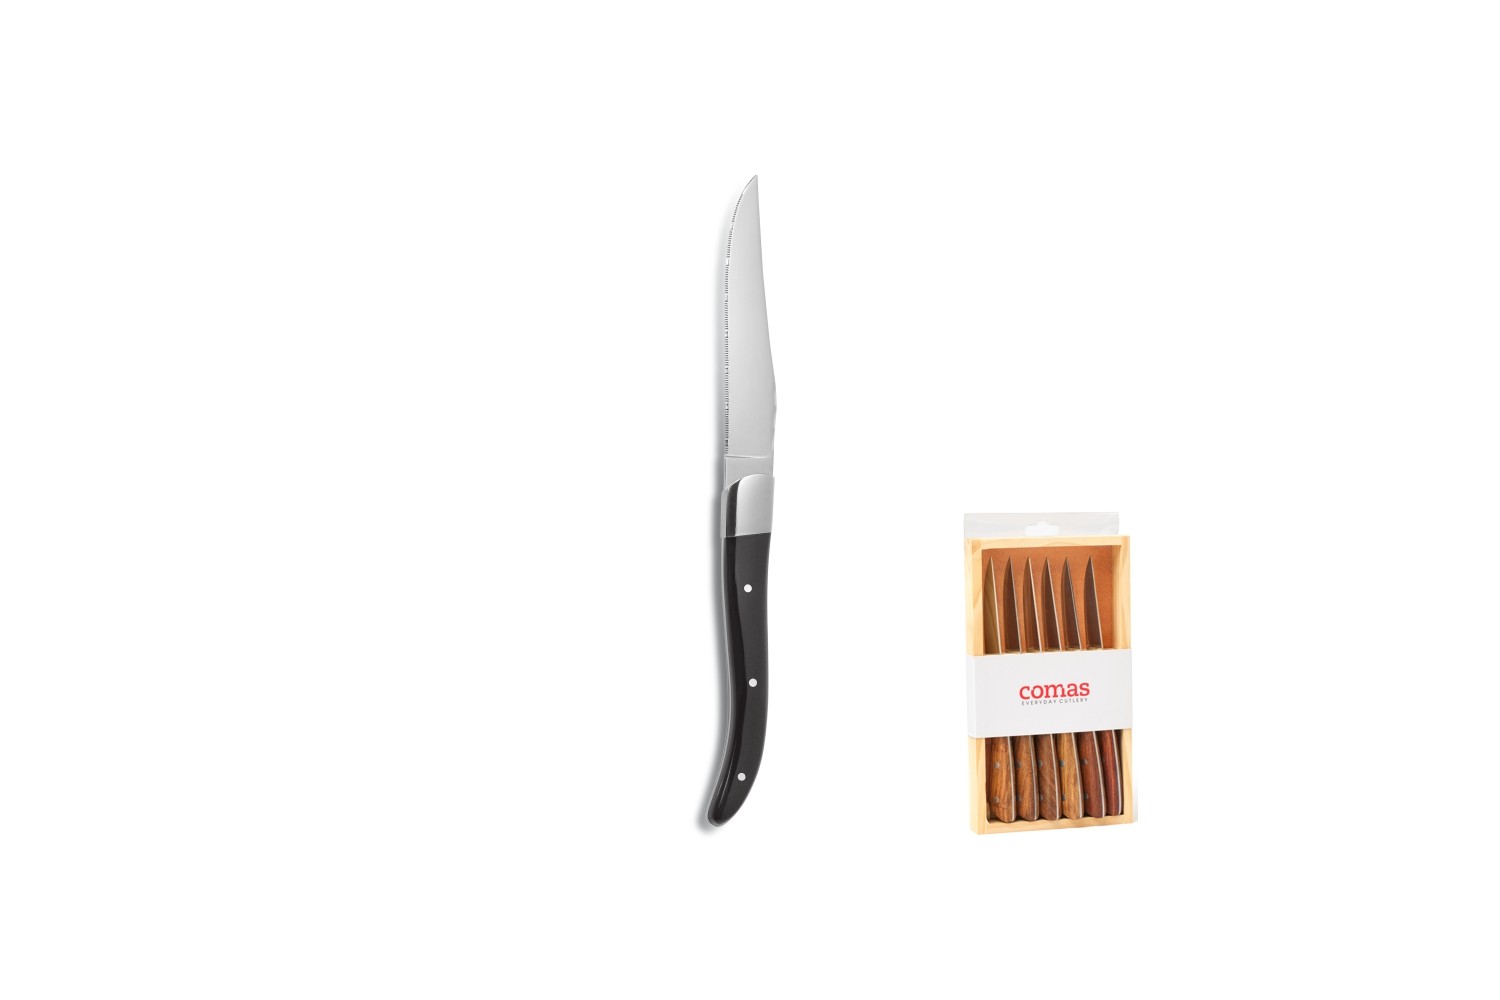 ACR BLACK STEAK KNIFE 6 PIECES WOOD CASE